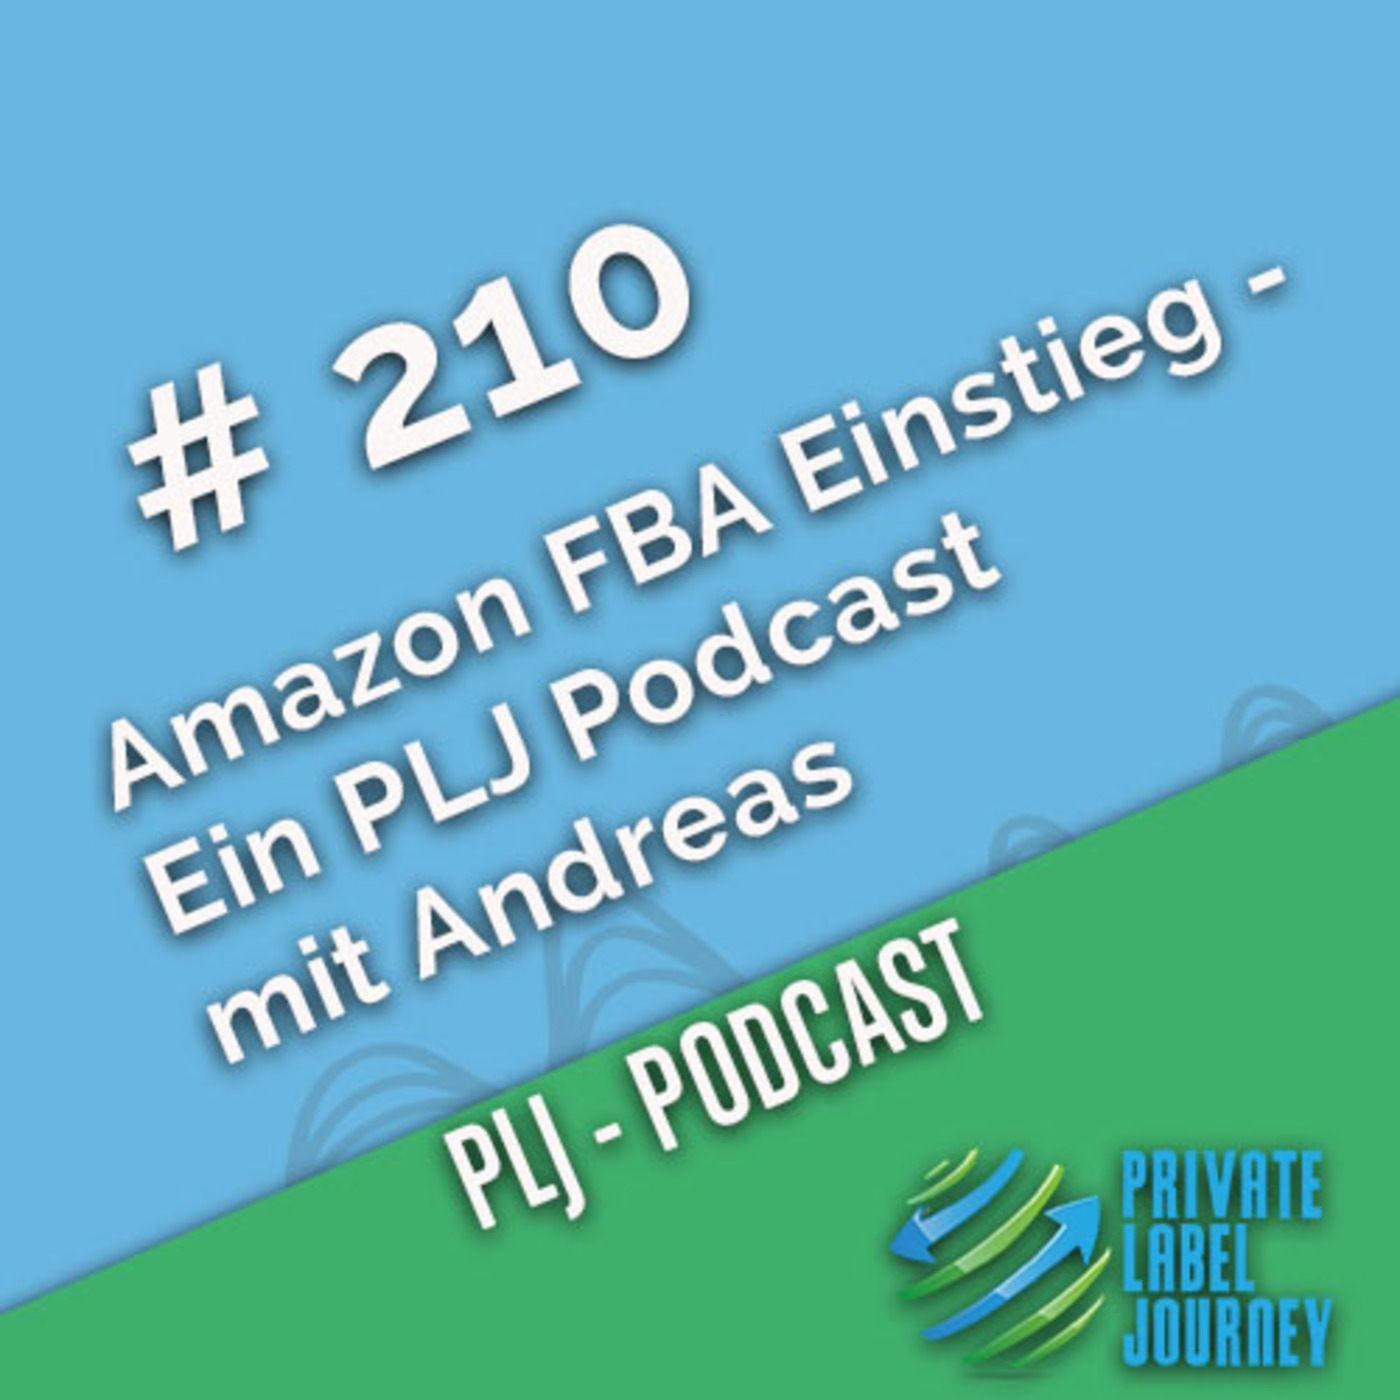 Amazon FBA Einstieg - Ein PLJ Podcast mit Andreas